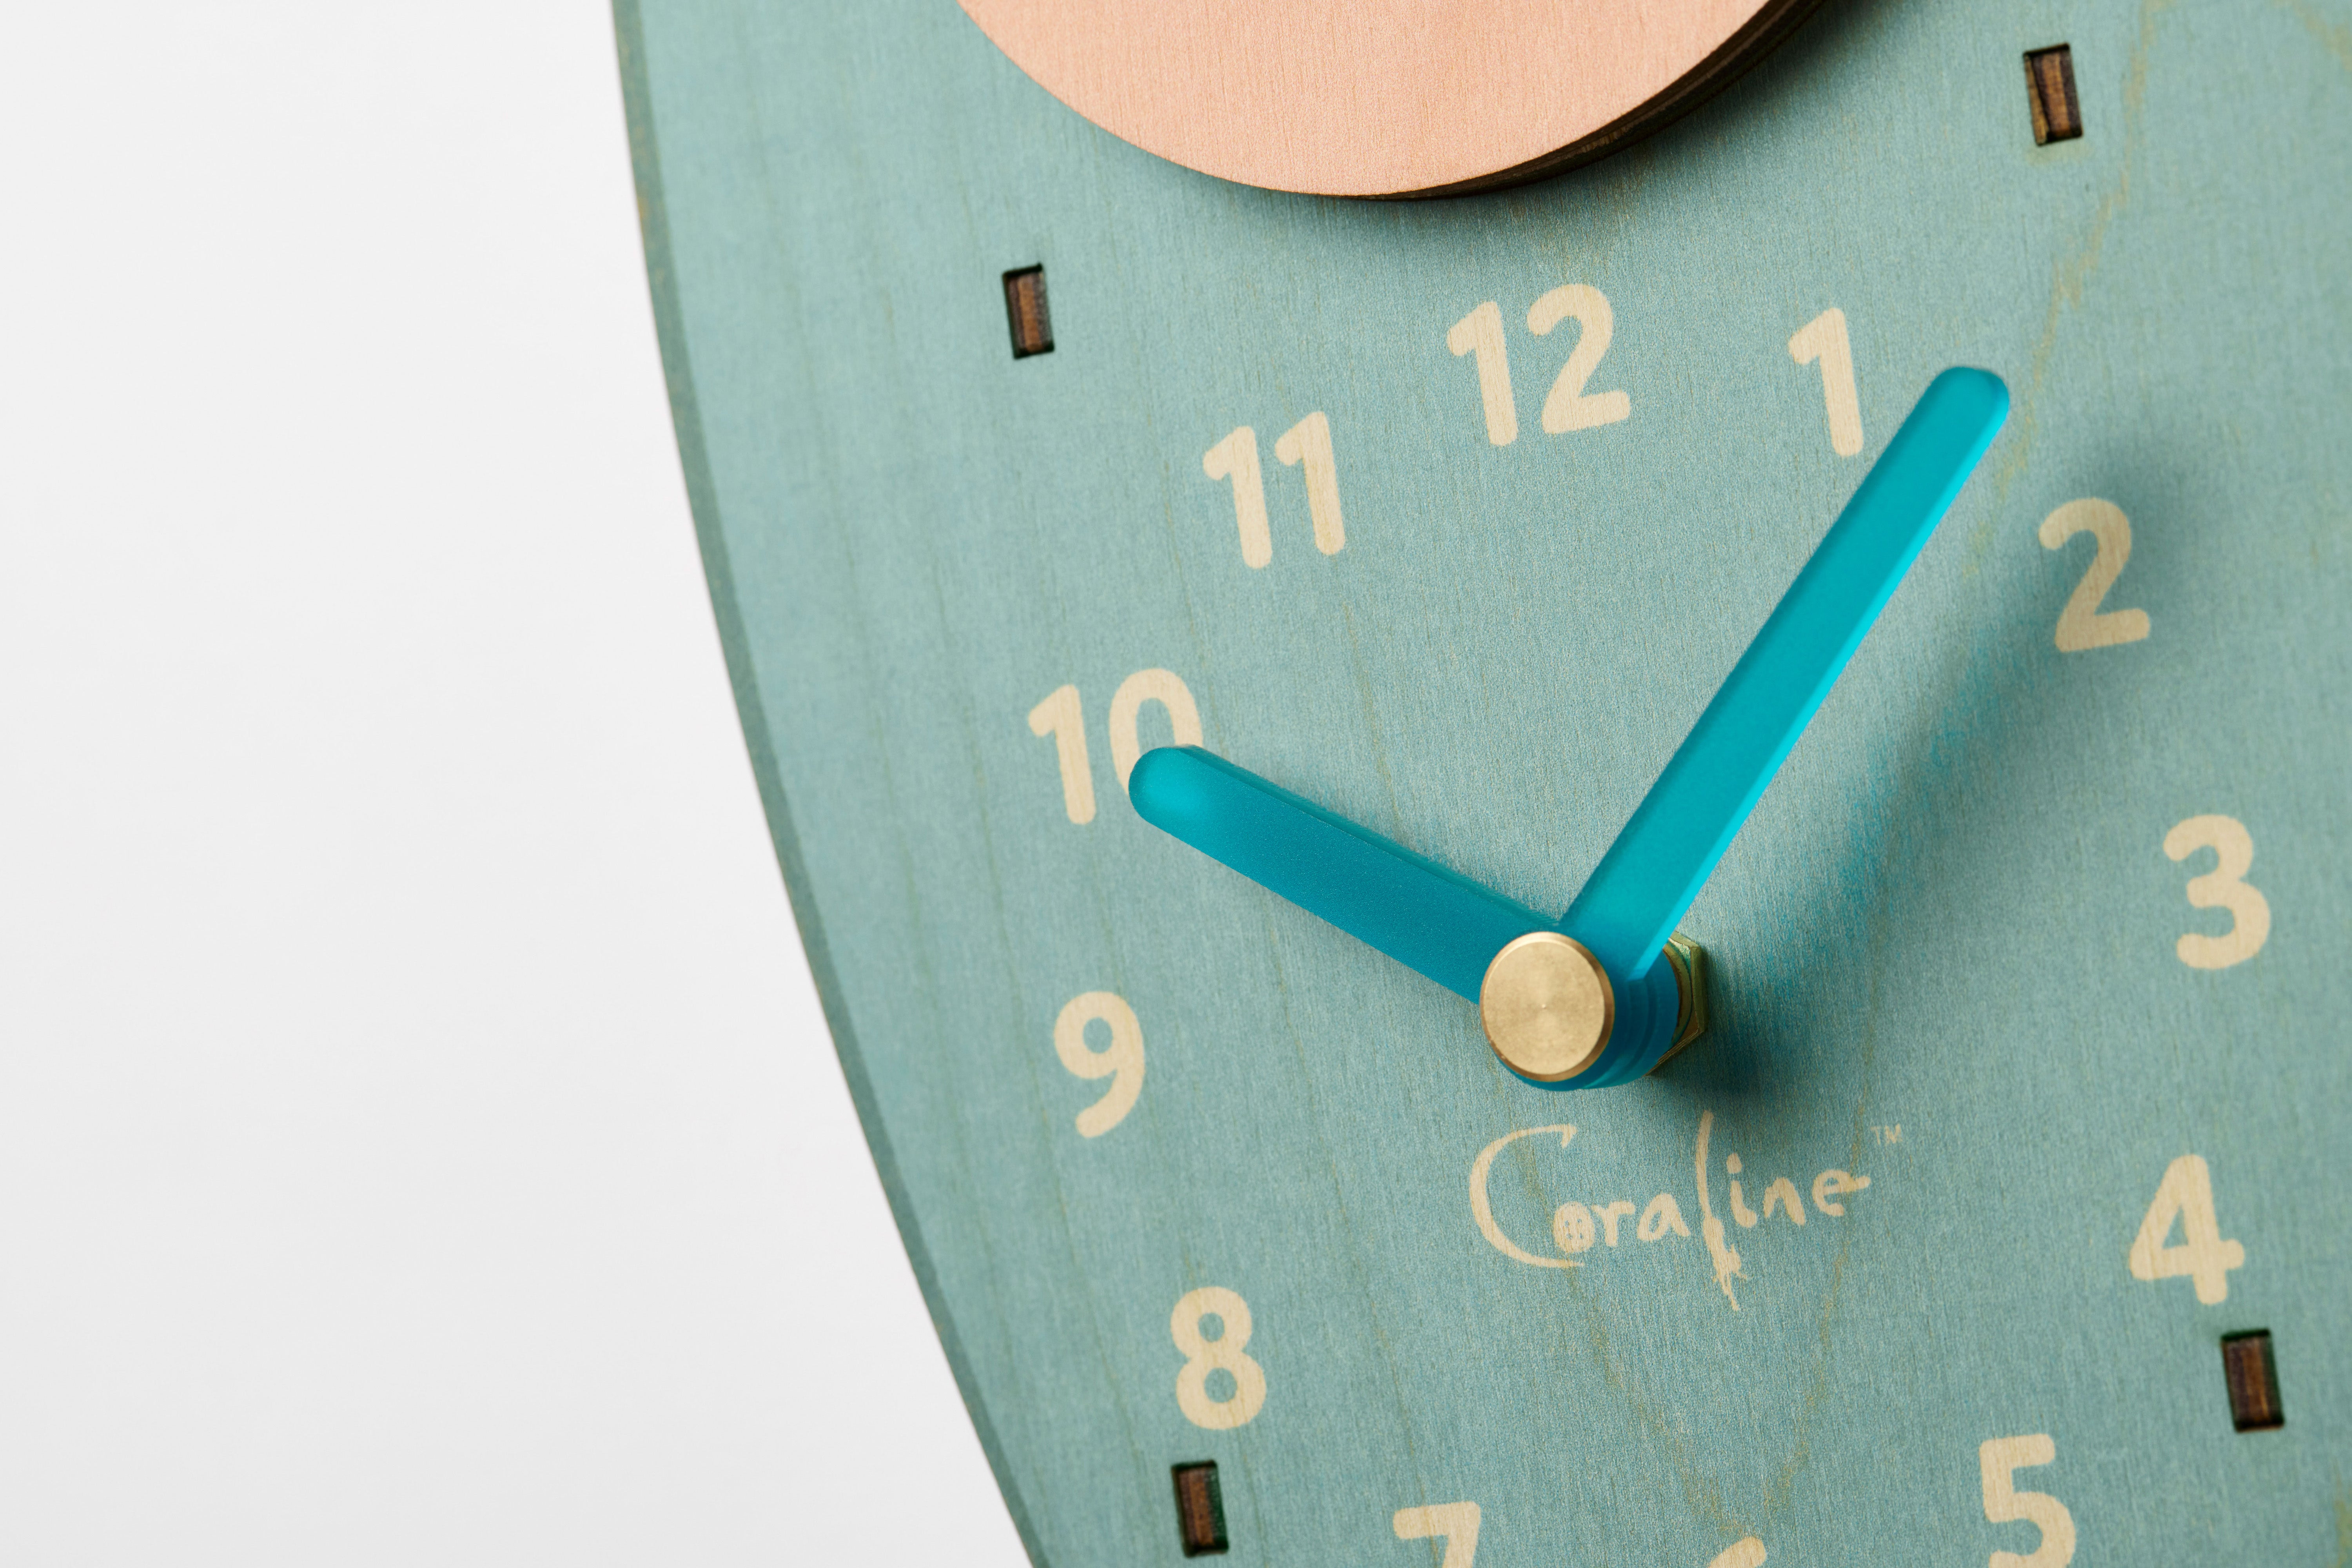 Coraline squid pendulum clock close-up featuring the hands of the clock